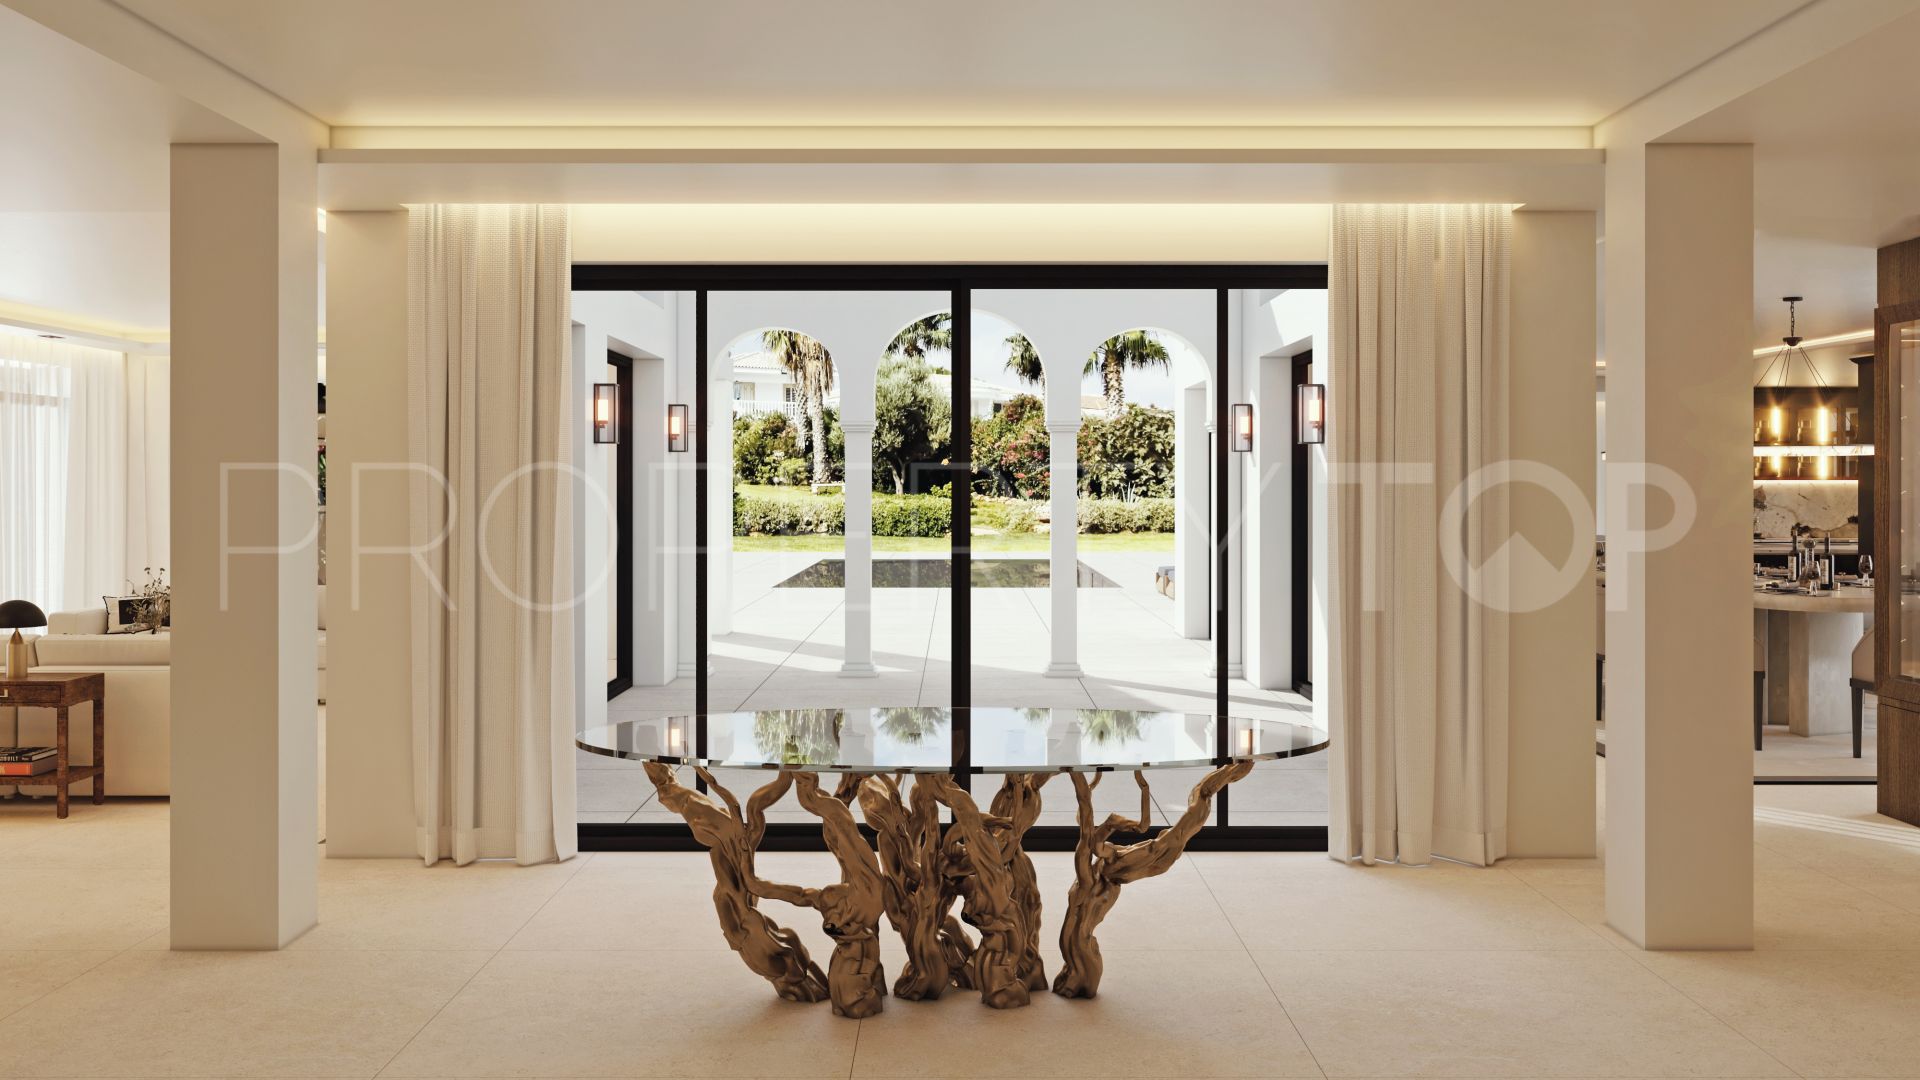 For sale villa in Las Brisas del Golf with 5 bedrooms